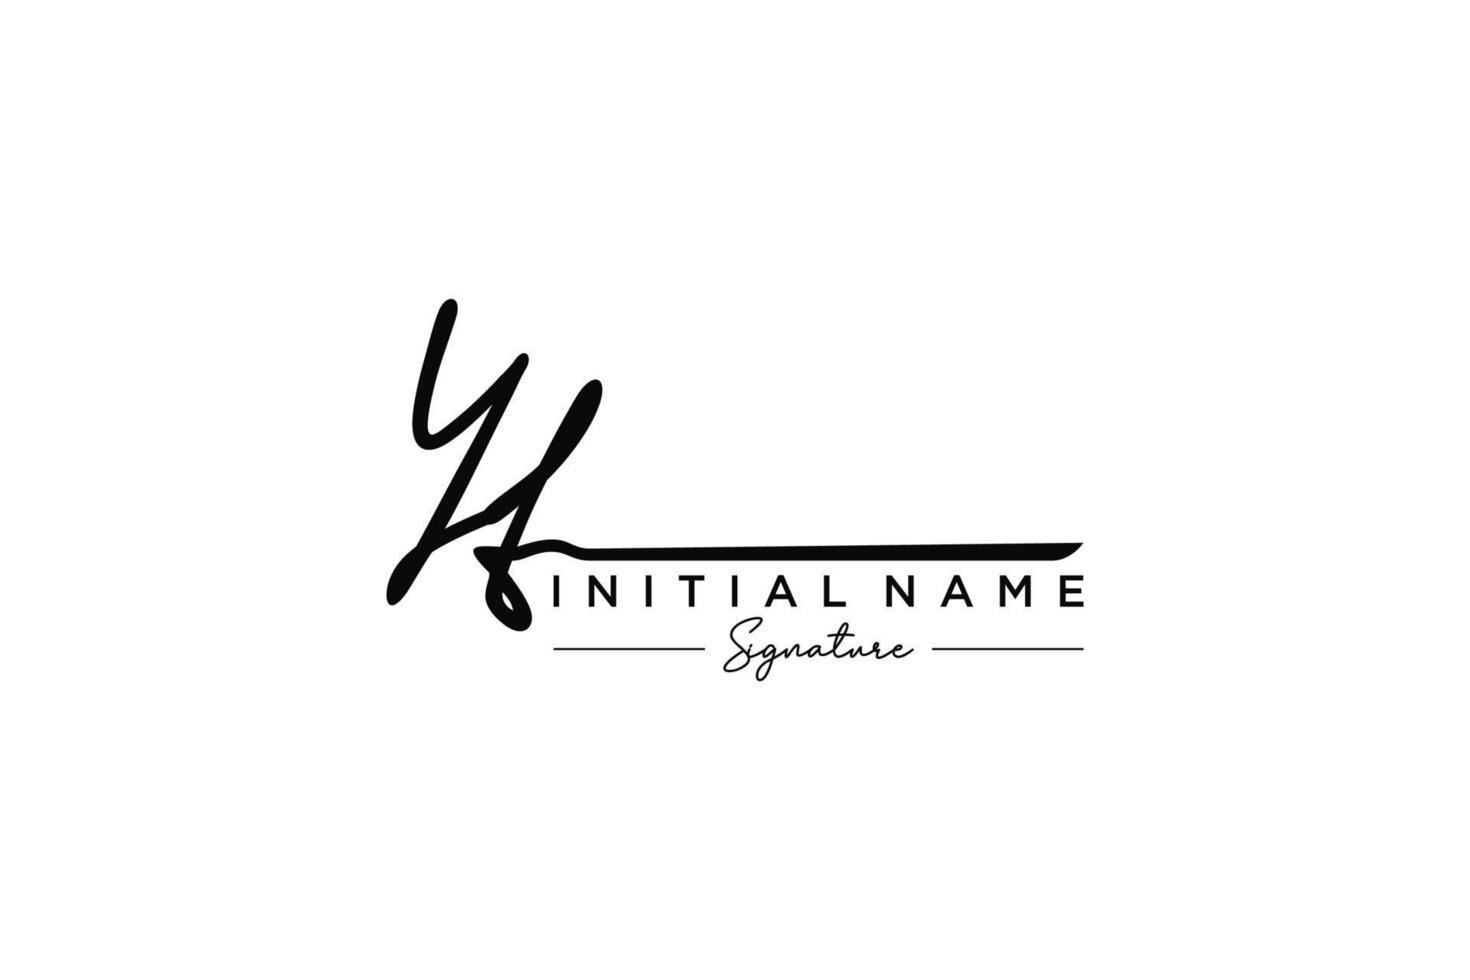 vector de plantilla de logotipo de firma inicial yt. ilustración de vector de letras de caligrafía dibujada a mano.